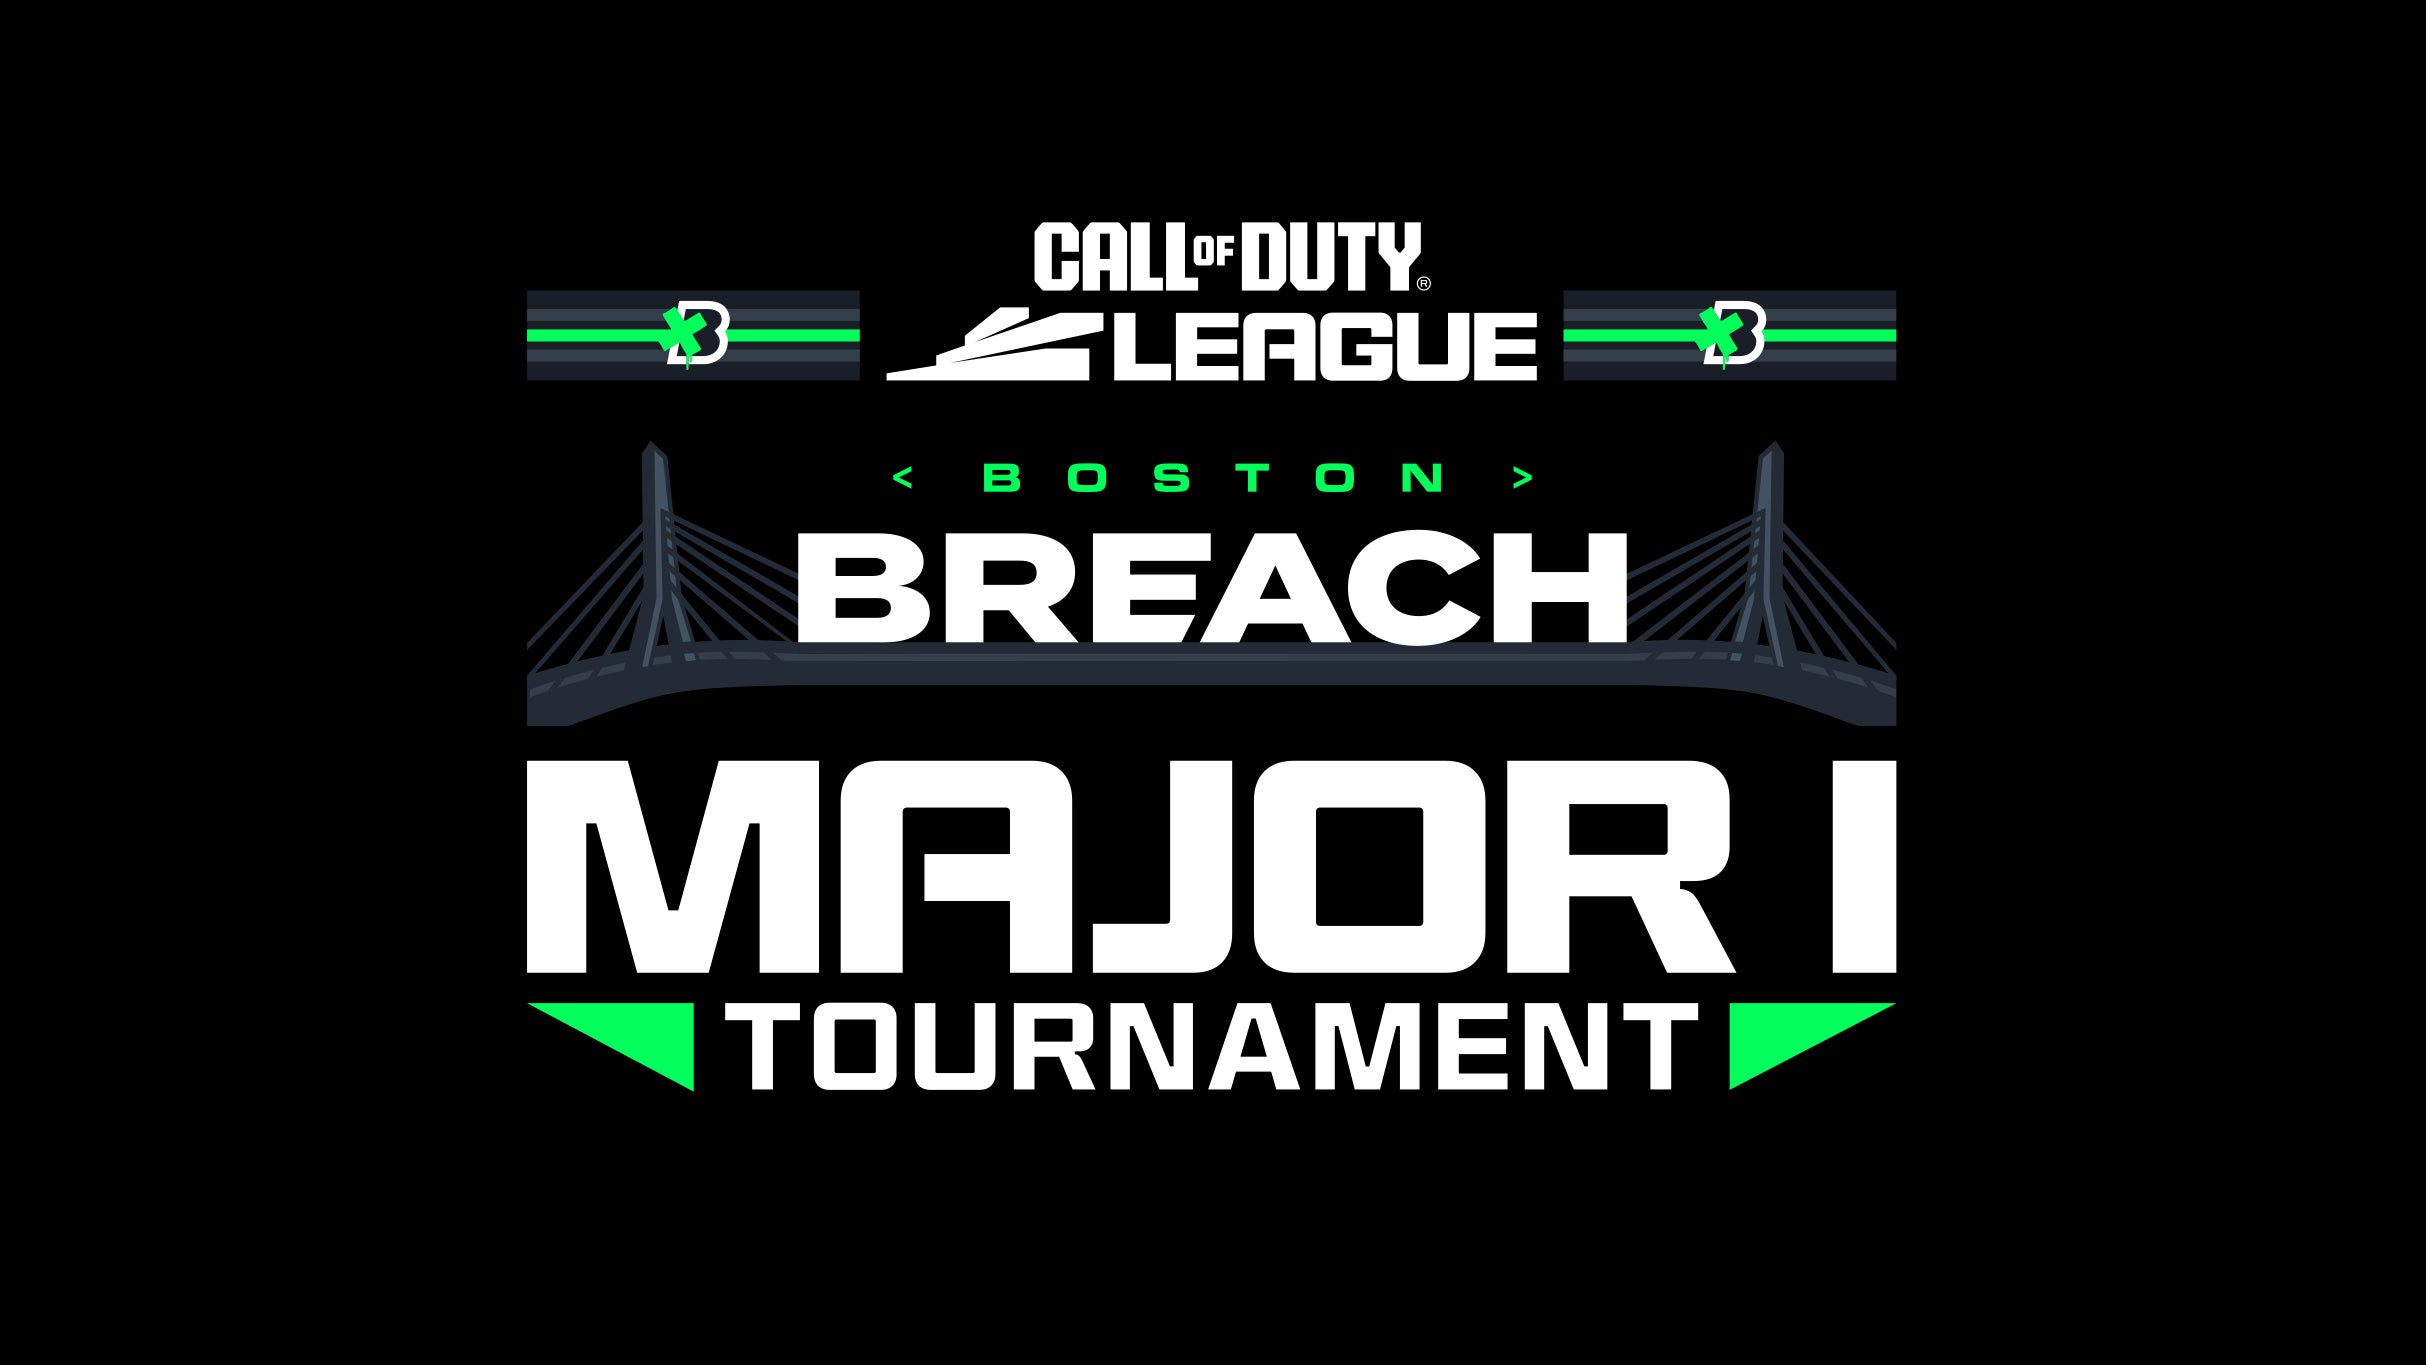 Call Of Duty League Major 1 - Boston Breach 4-Day Pass (17+) in Boston promo photo for Mezzanine Friends & Family  presale offer code